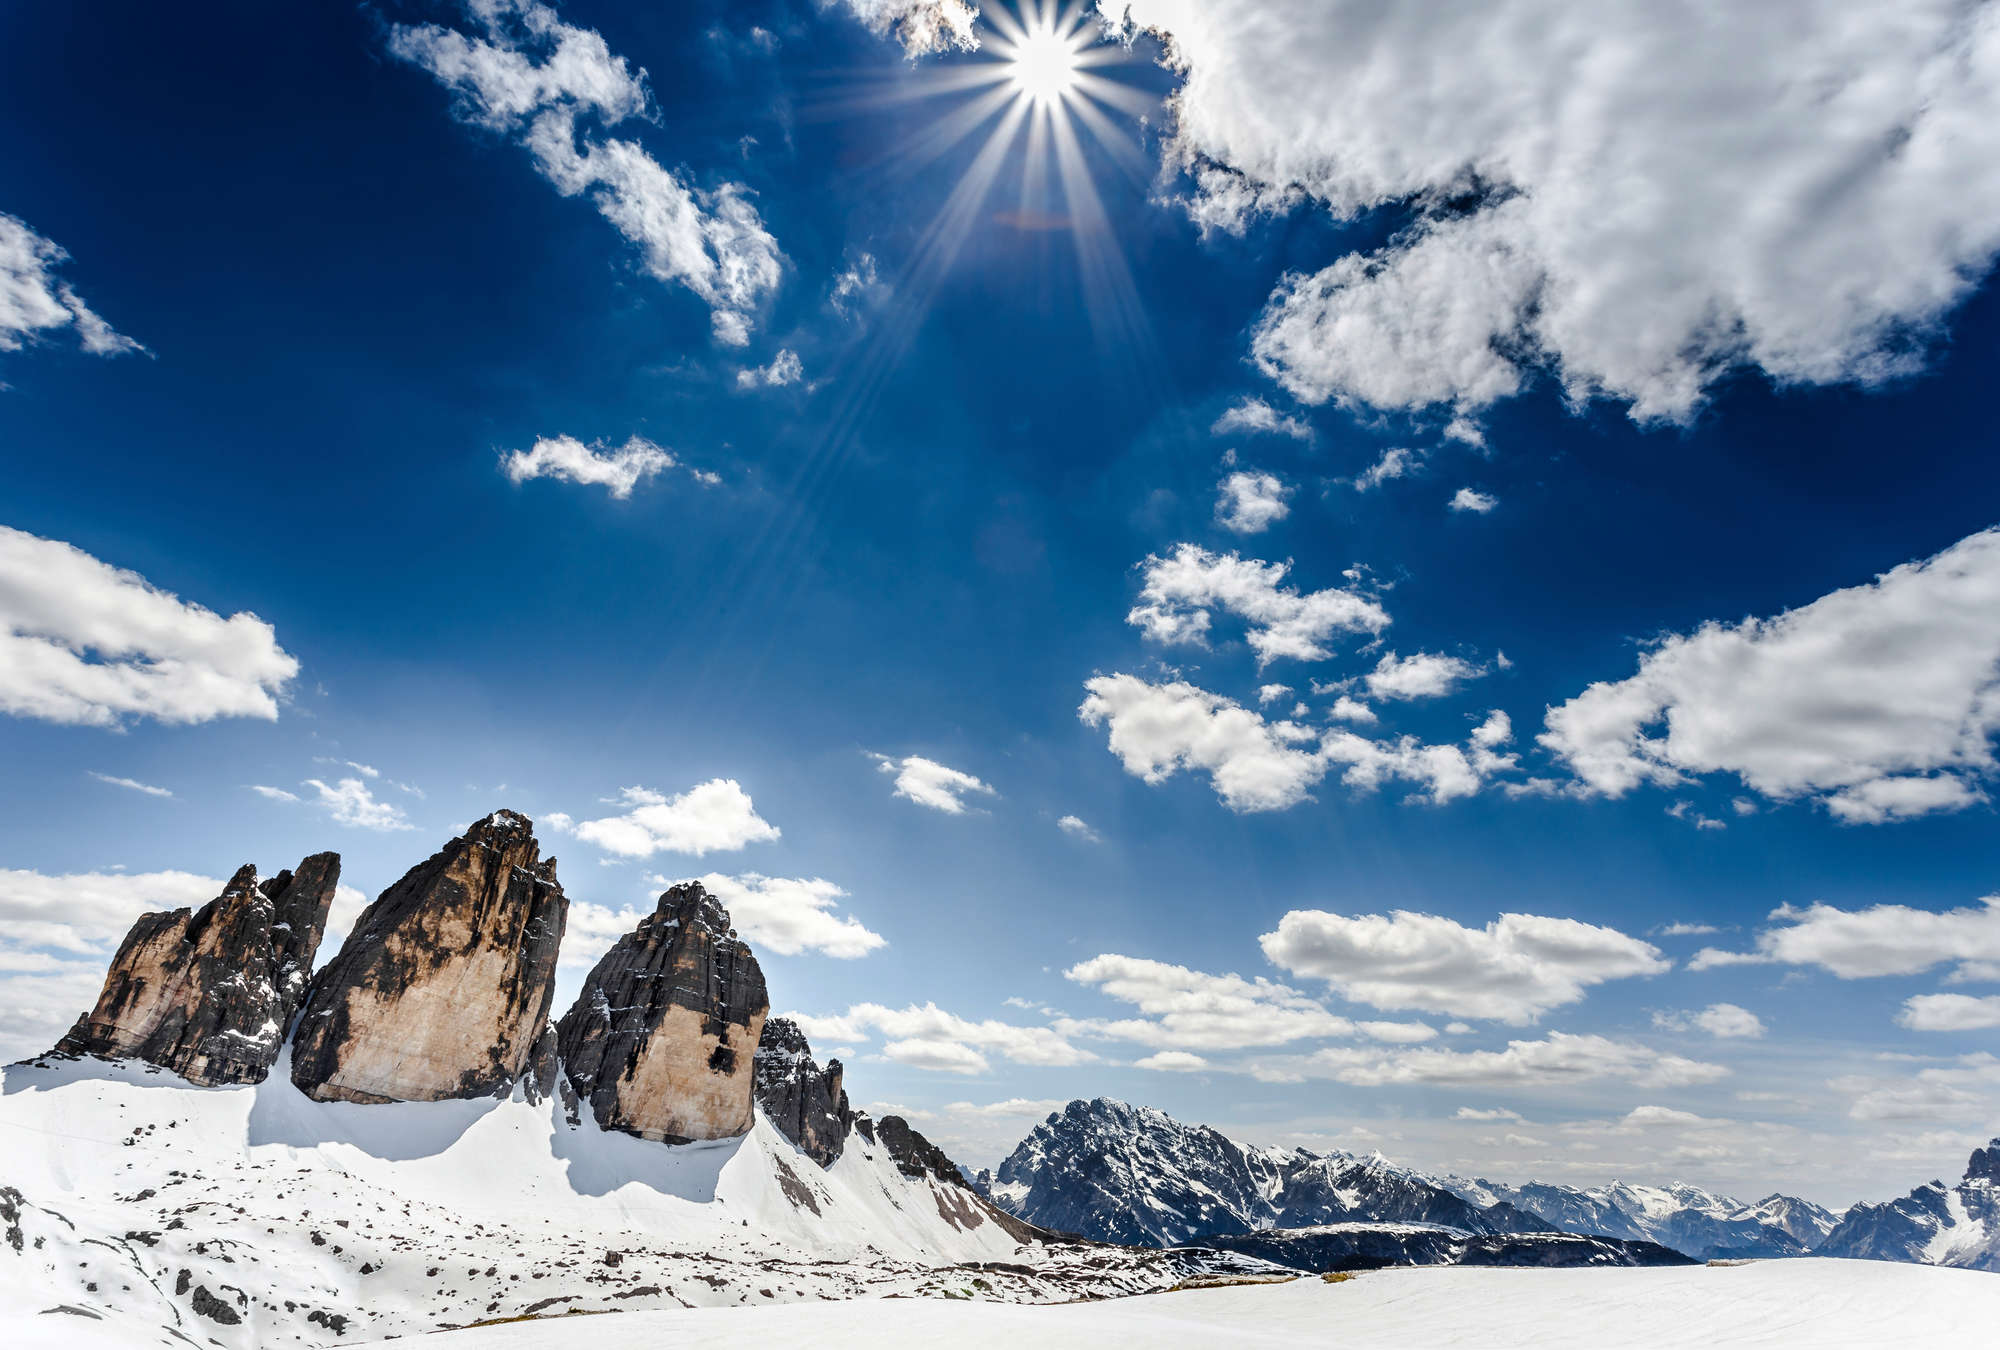             Fotomurali Paesaggio invernale di montagna con vista sulle Tre Cime
        